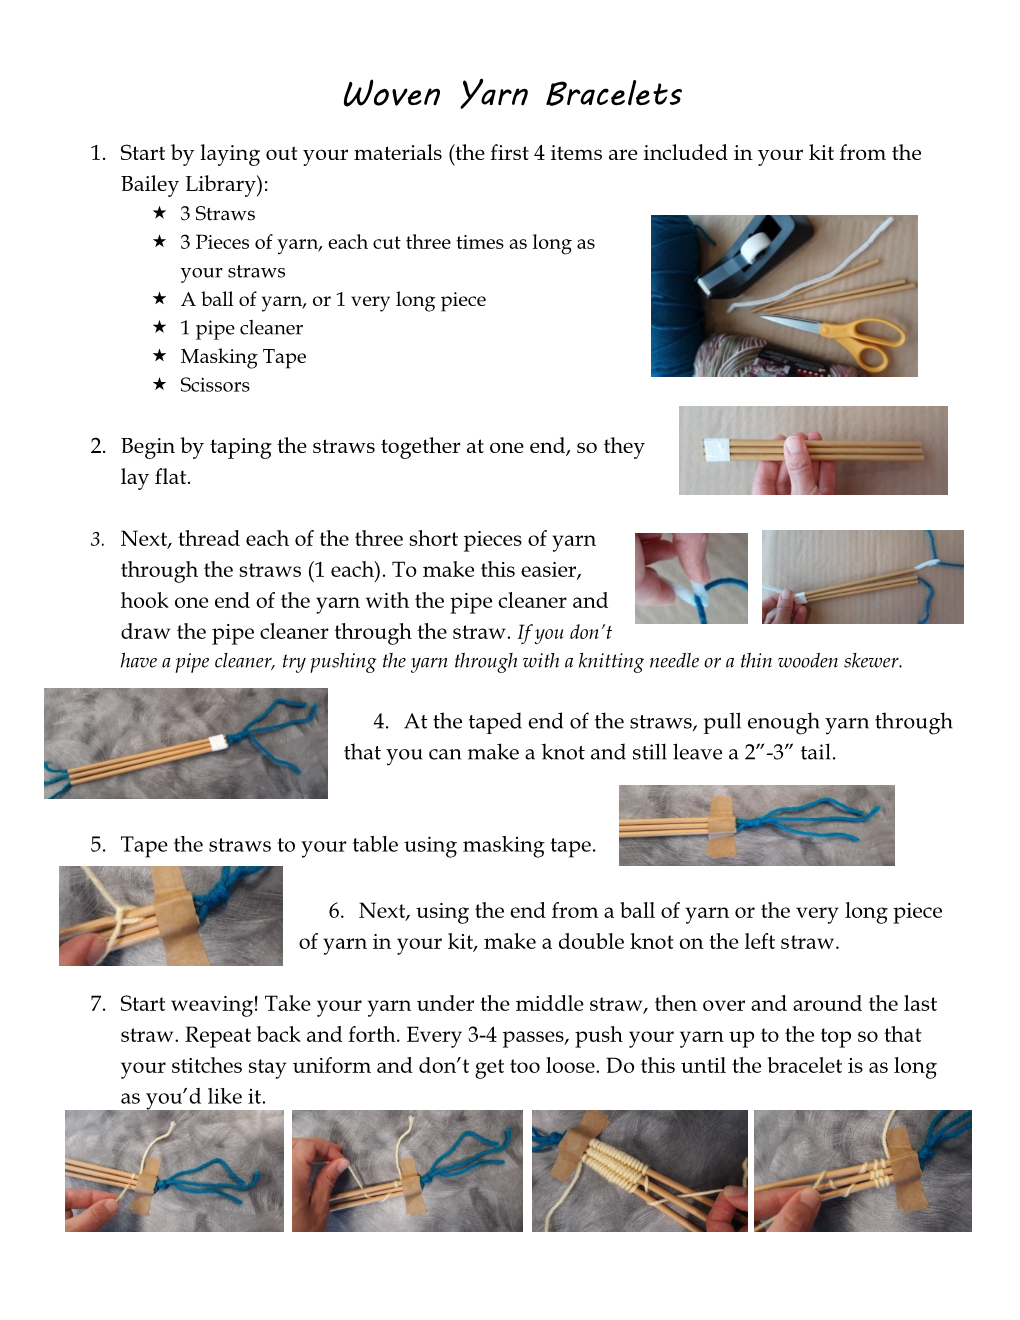 Woven Yarn Bracelet Instructions